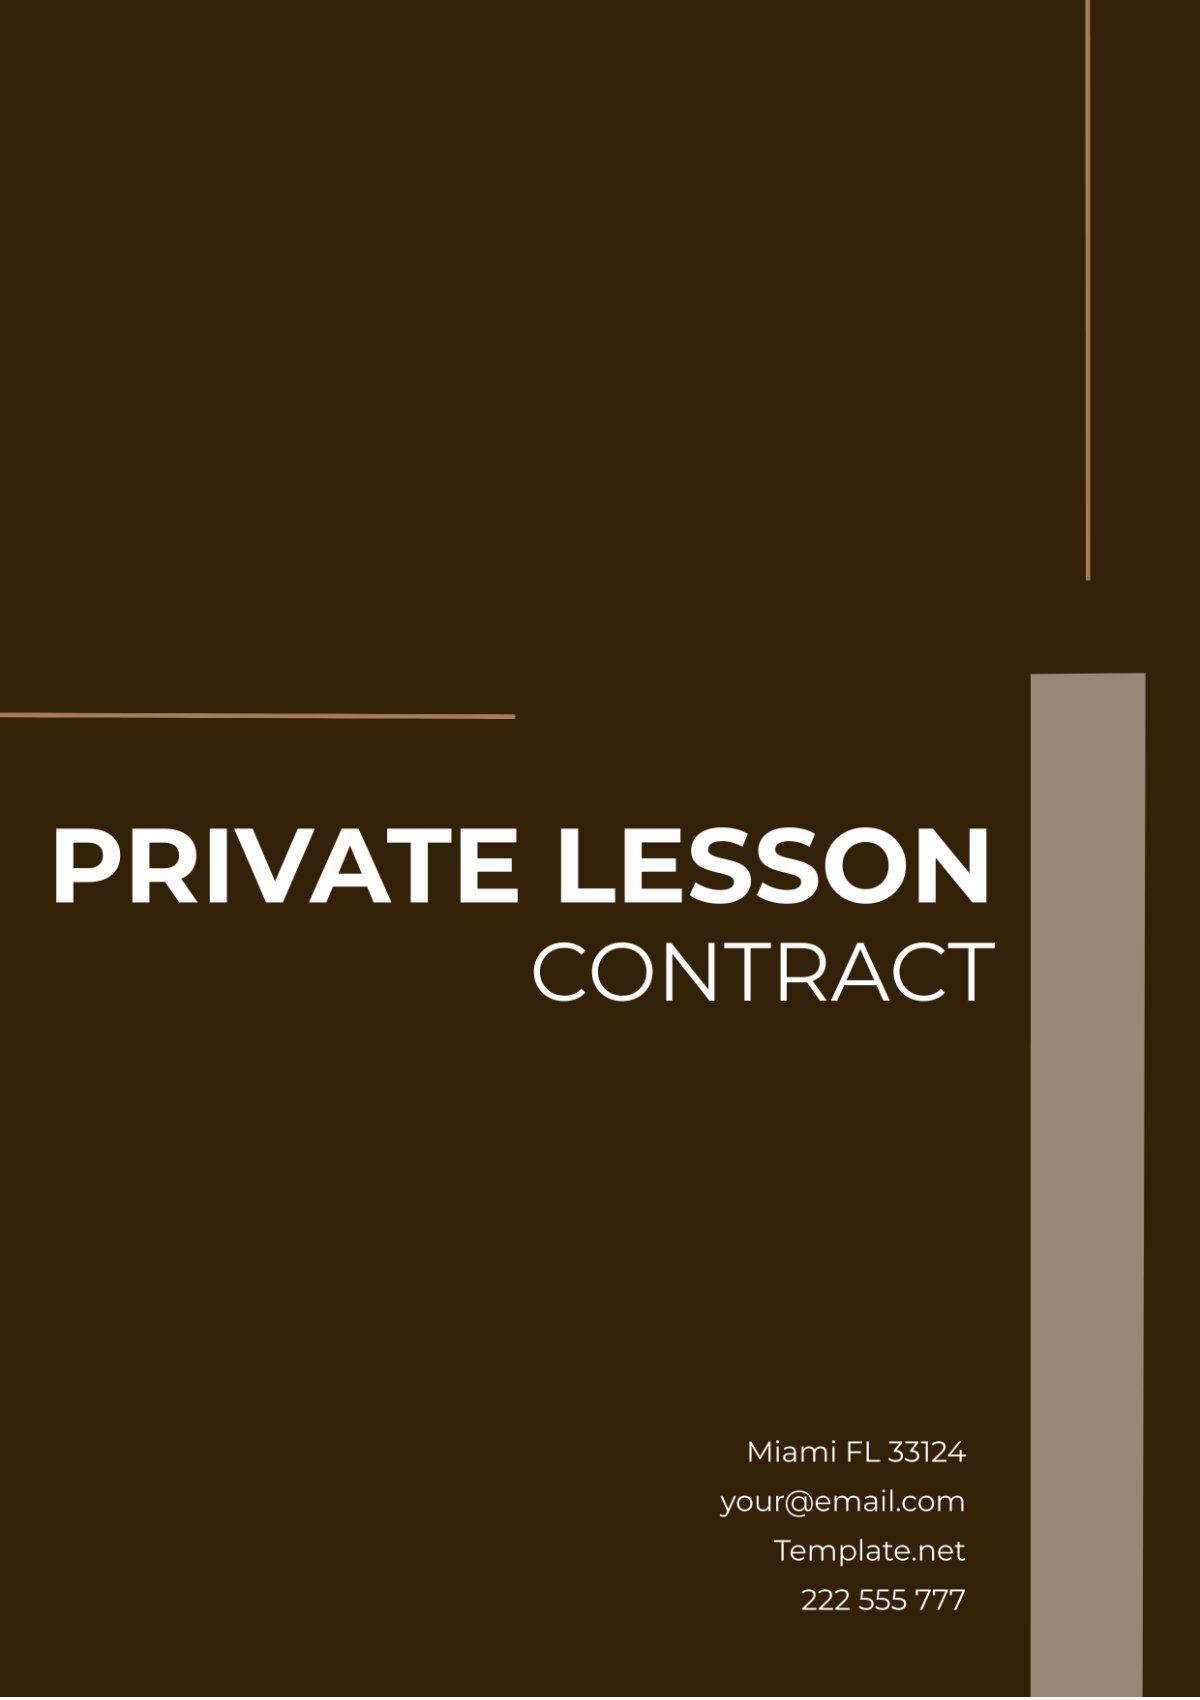 Private Lesson Contract Template